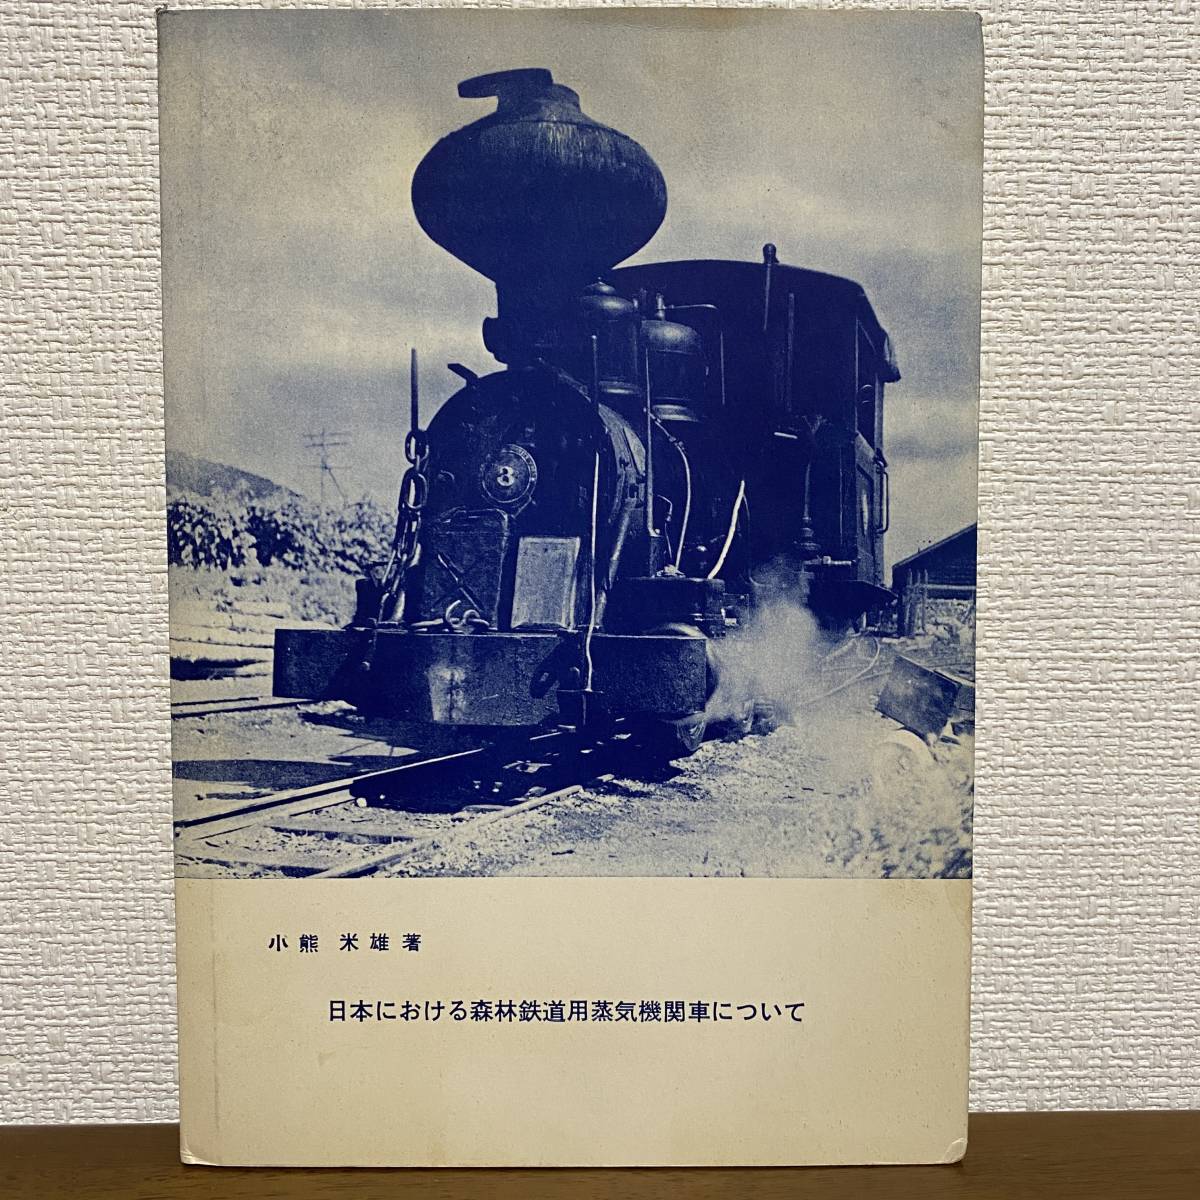 S816　日本における森林鉄道用蒸気機関車について　演習林業務資料　鉄道　希少　1961年　小熊米雄　貴重　レア